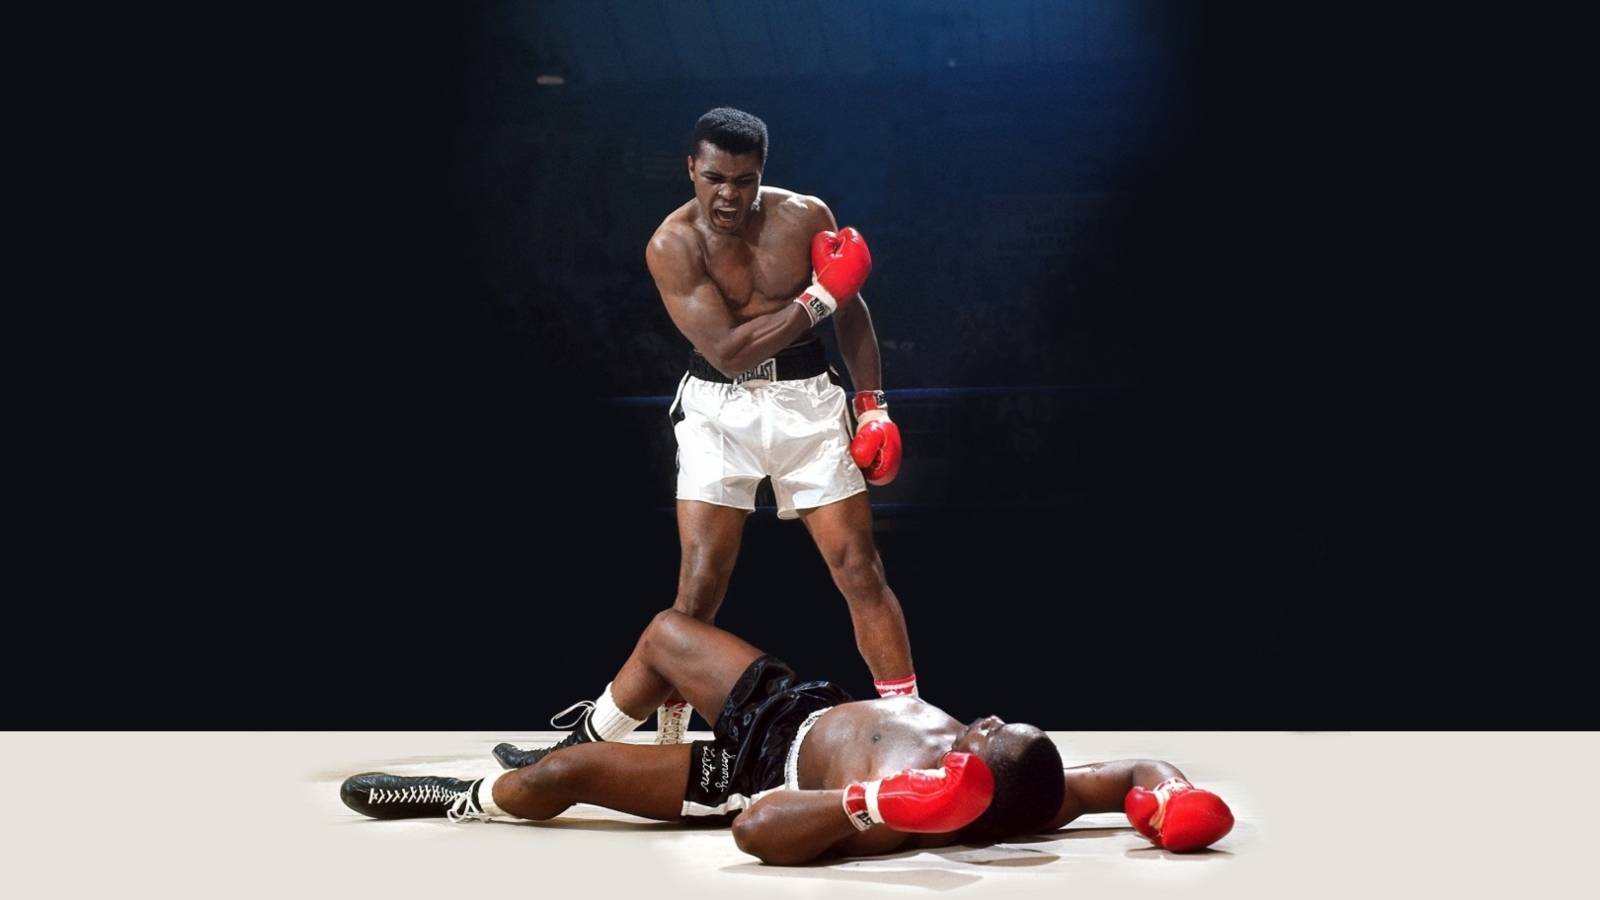 Mohammed Ali Legendary Boxer wallpaper 1600x900